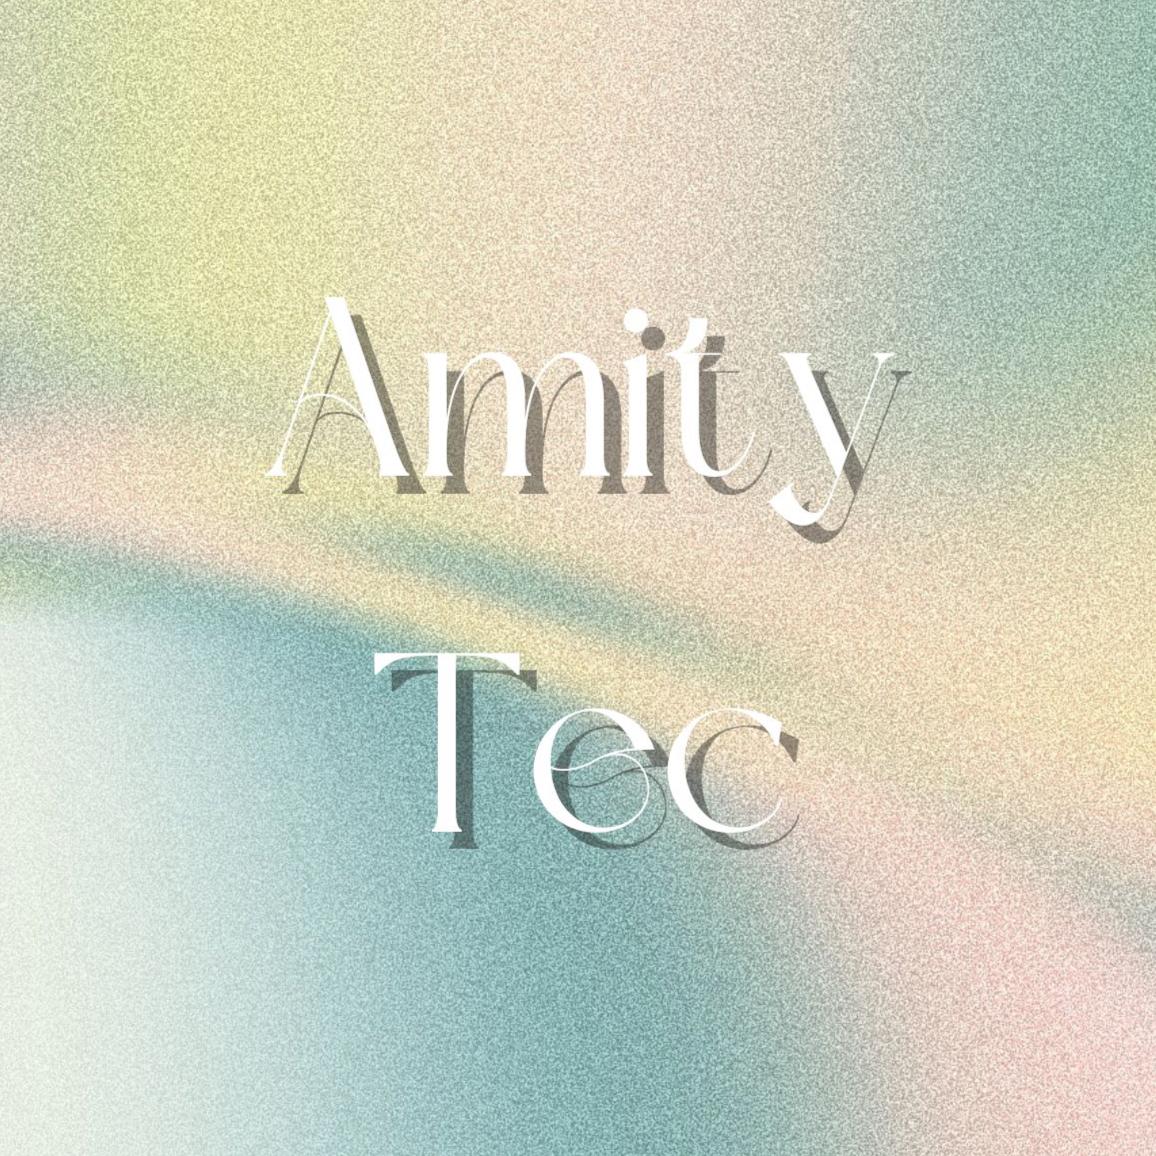 Amity.TEC